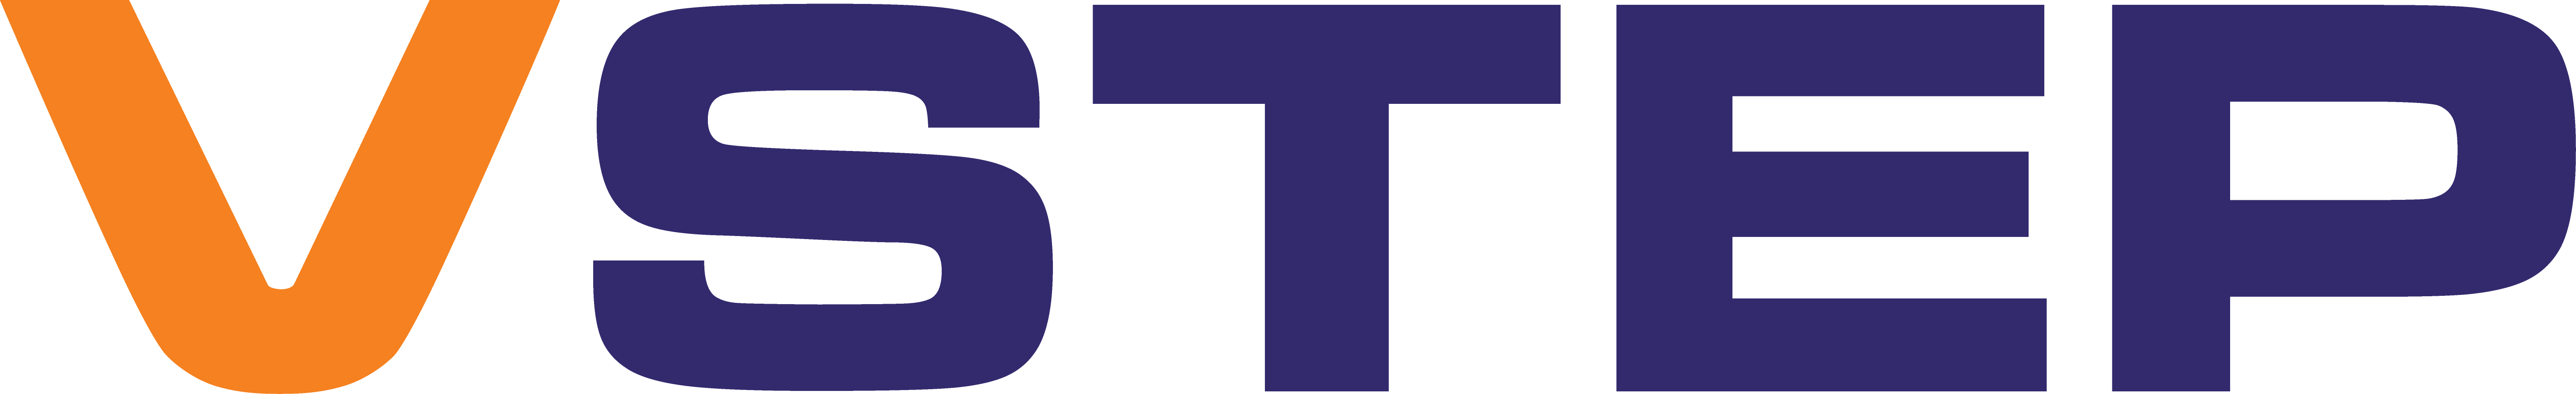 VSTEP Logo NoArrow V2